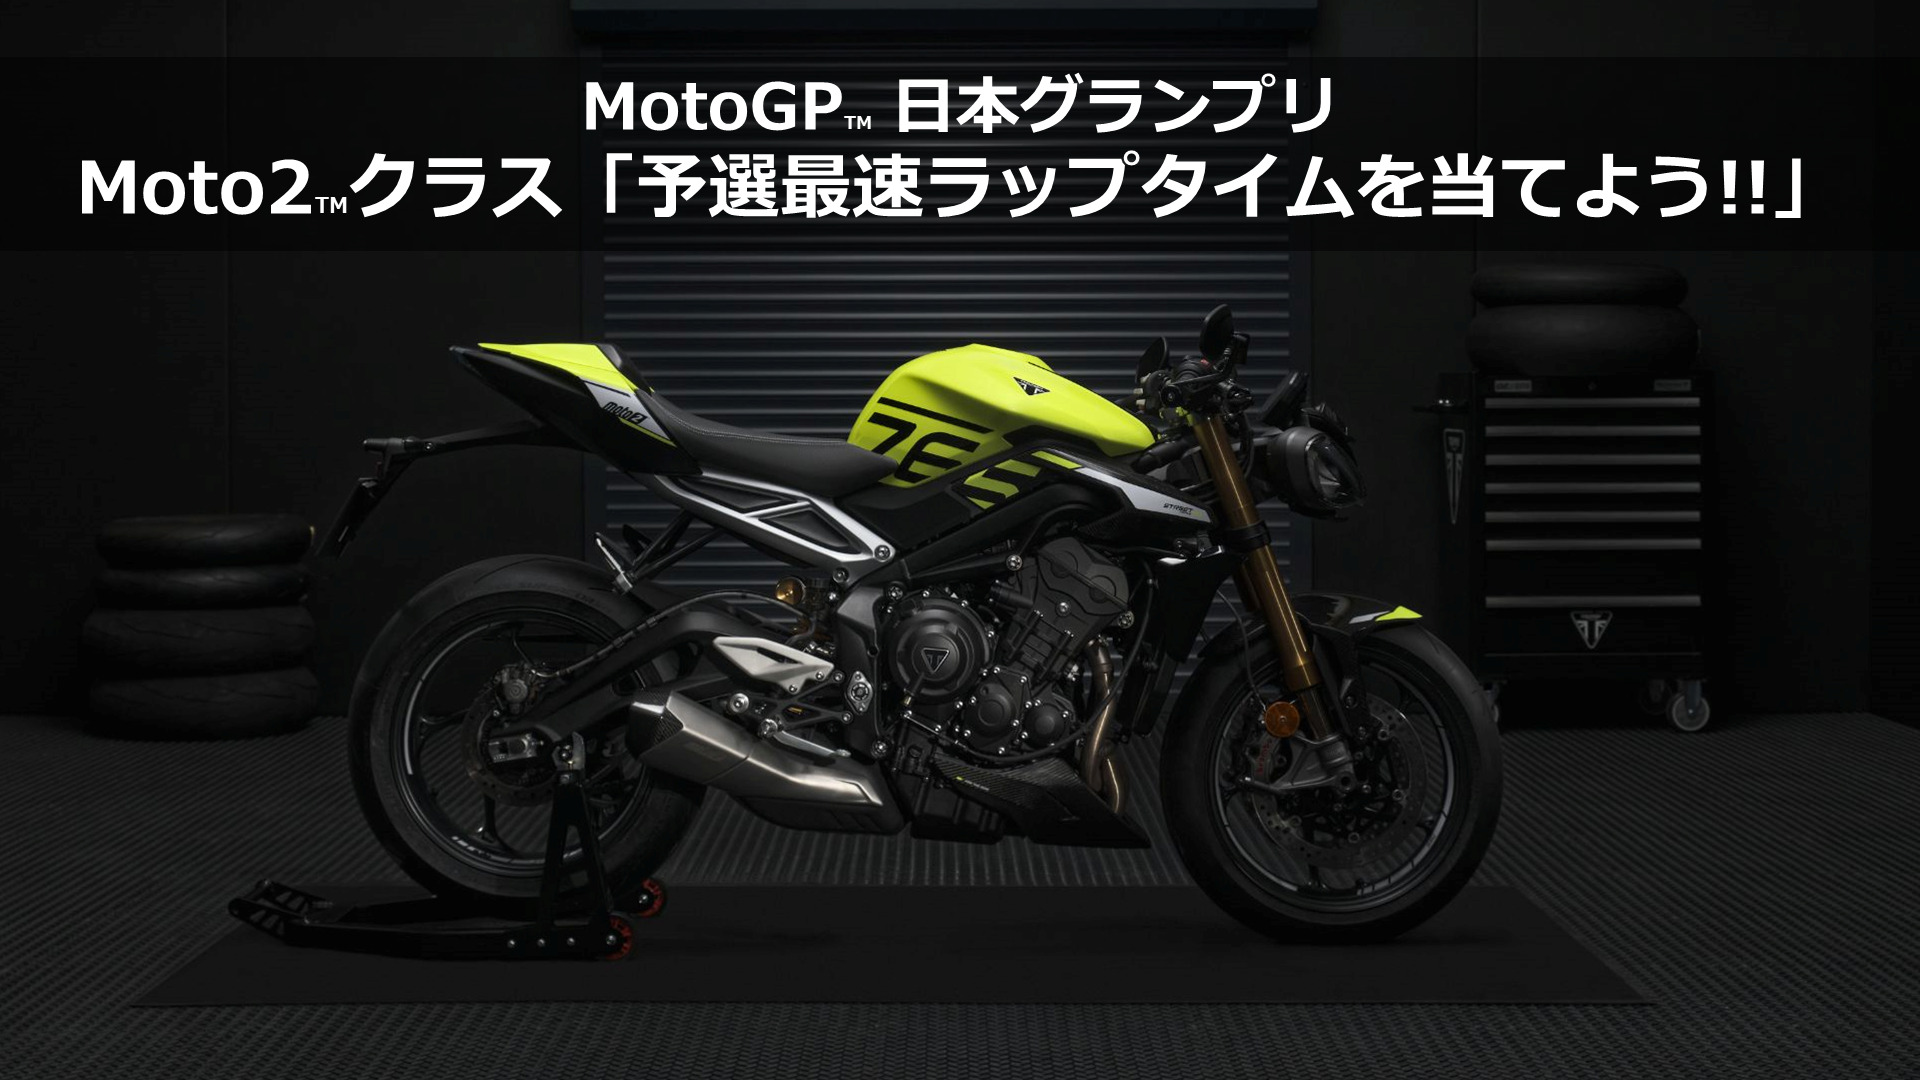 トライアンフが「MotoGP™日本グランプリ」にブース出展。オリジナルグッズが当たるキャンペーンも